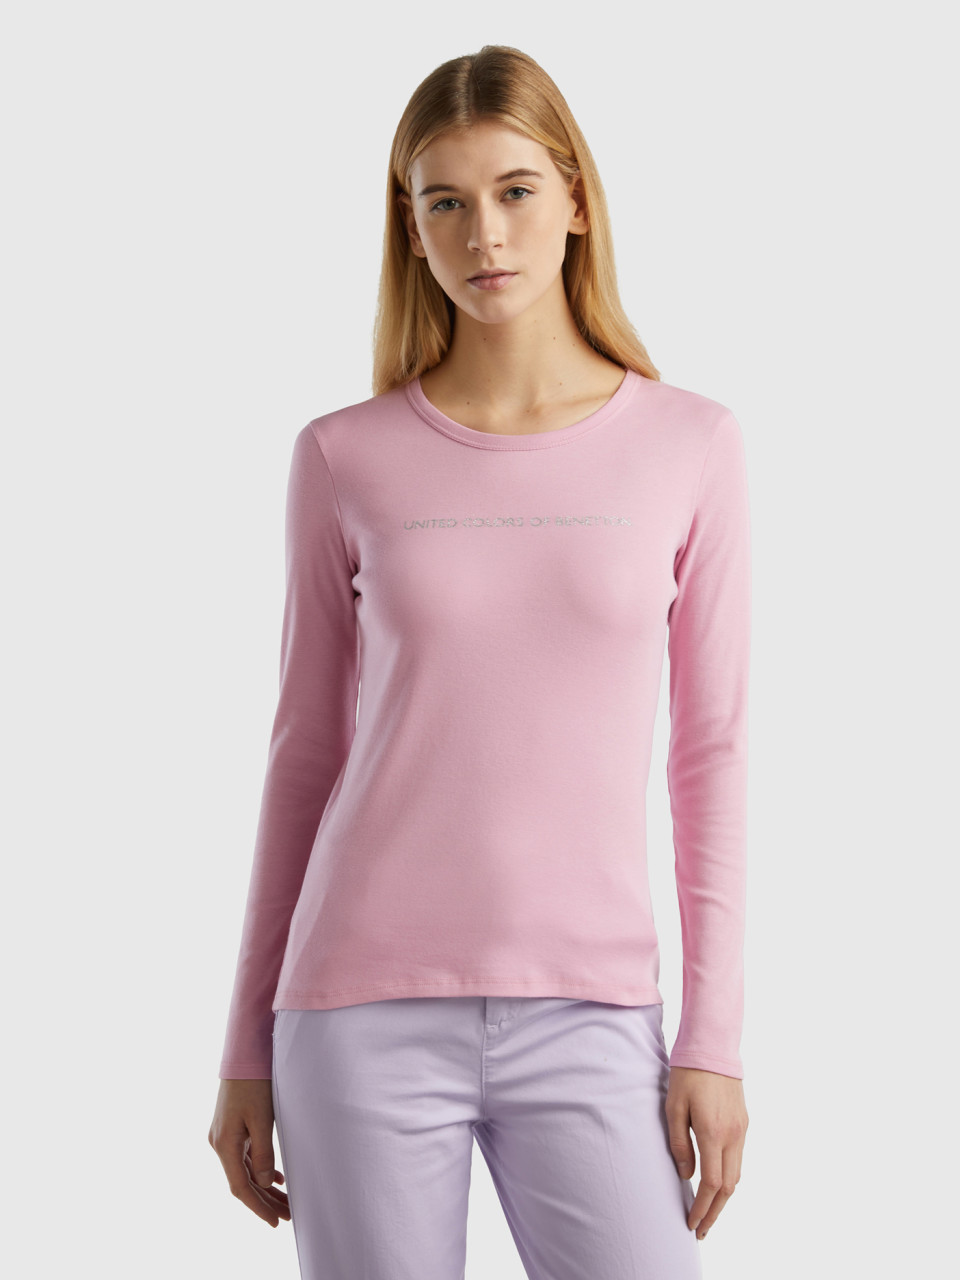 Benetton, Pastel Pink 100% Cotton Long Sleeve T-shirt, Pastel Pink, Women